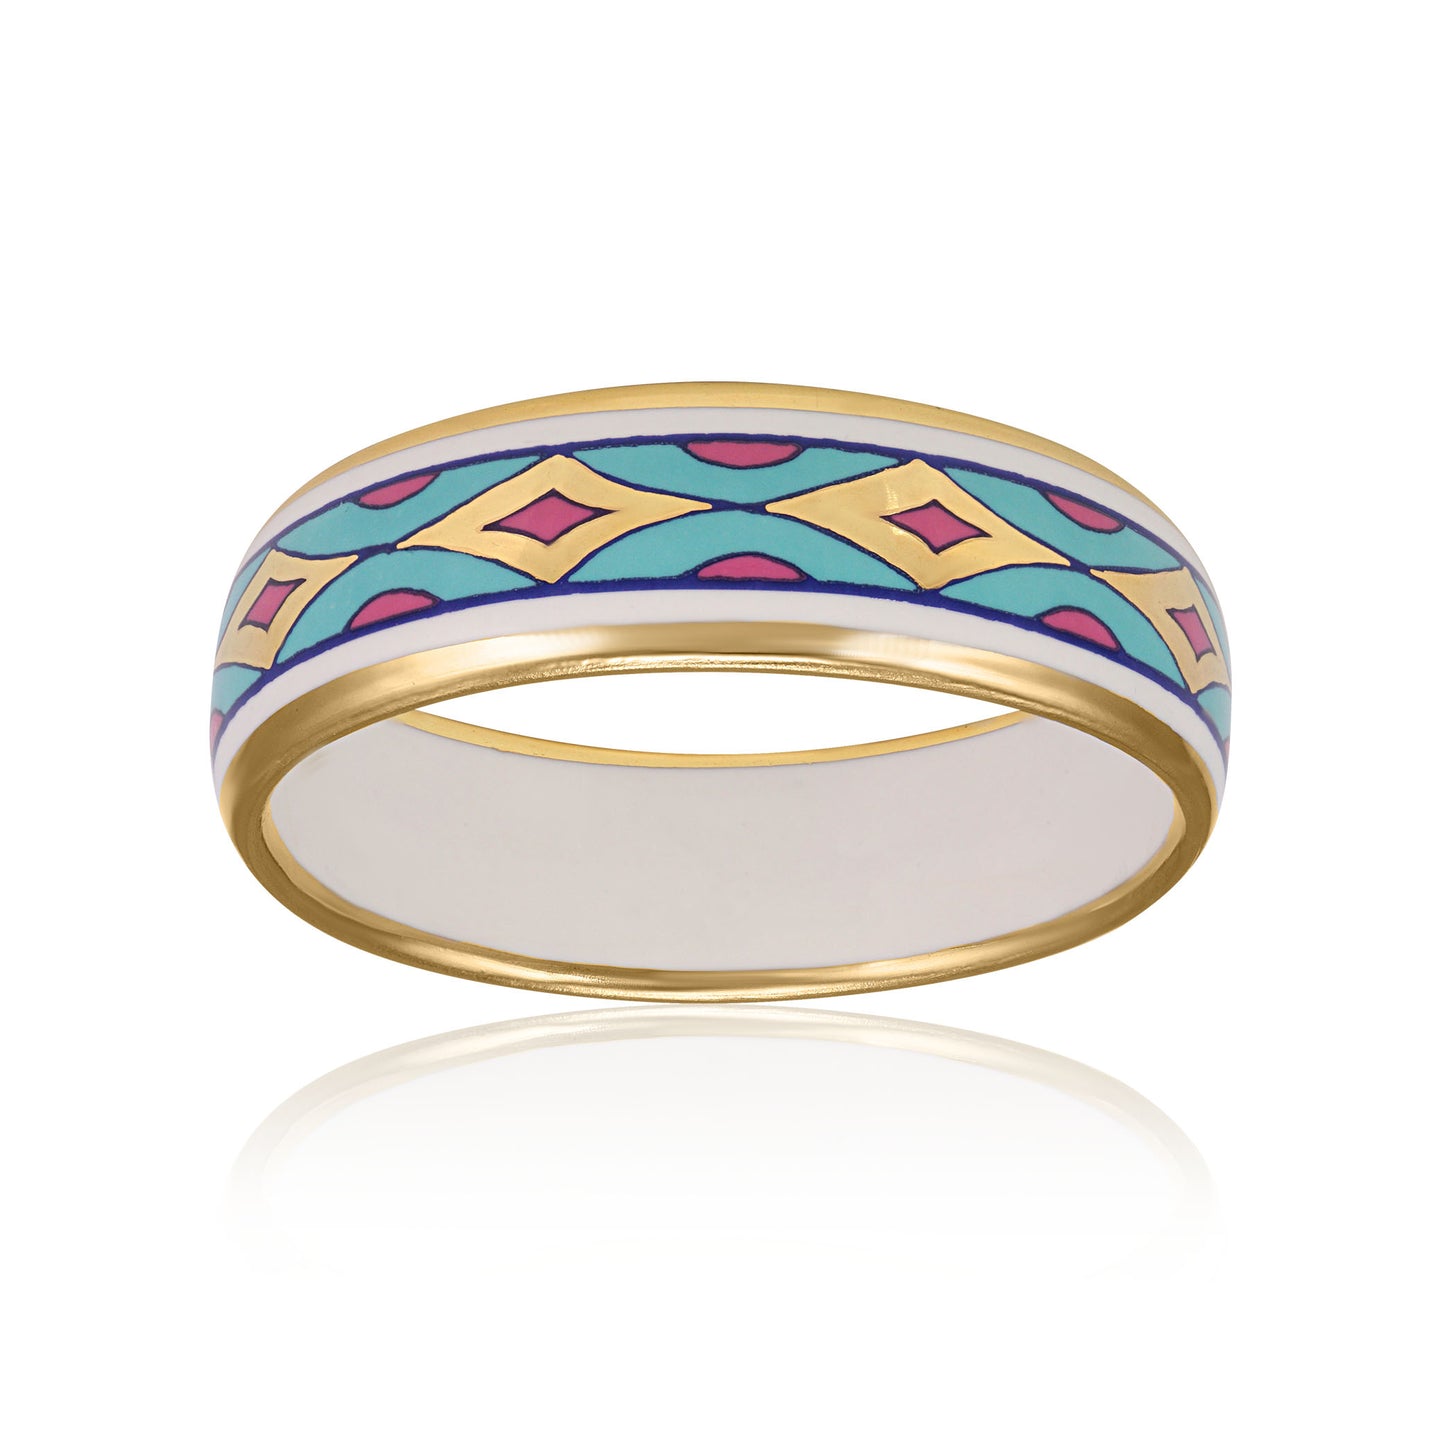 GOLD OF DESERT gold plated blue/pink fine porcelain bracelet